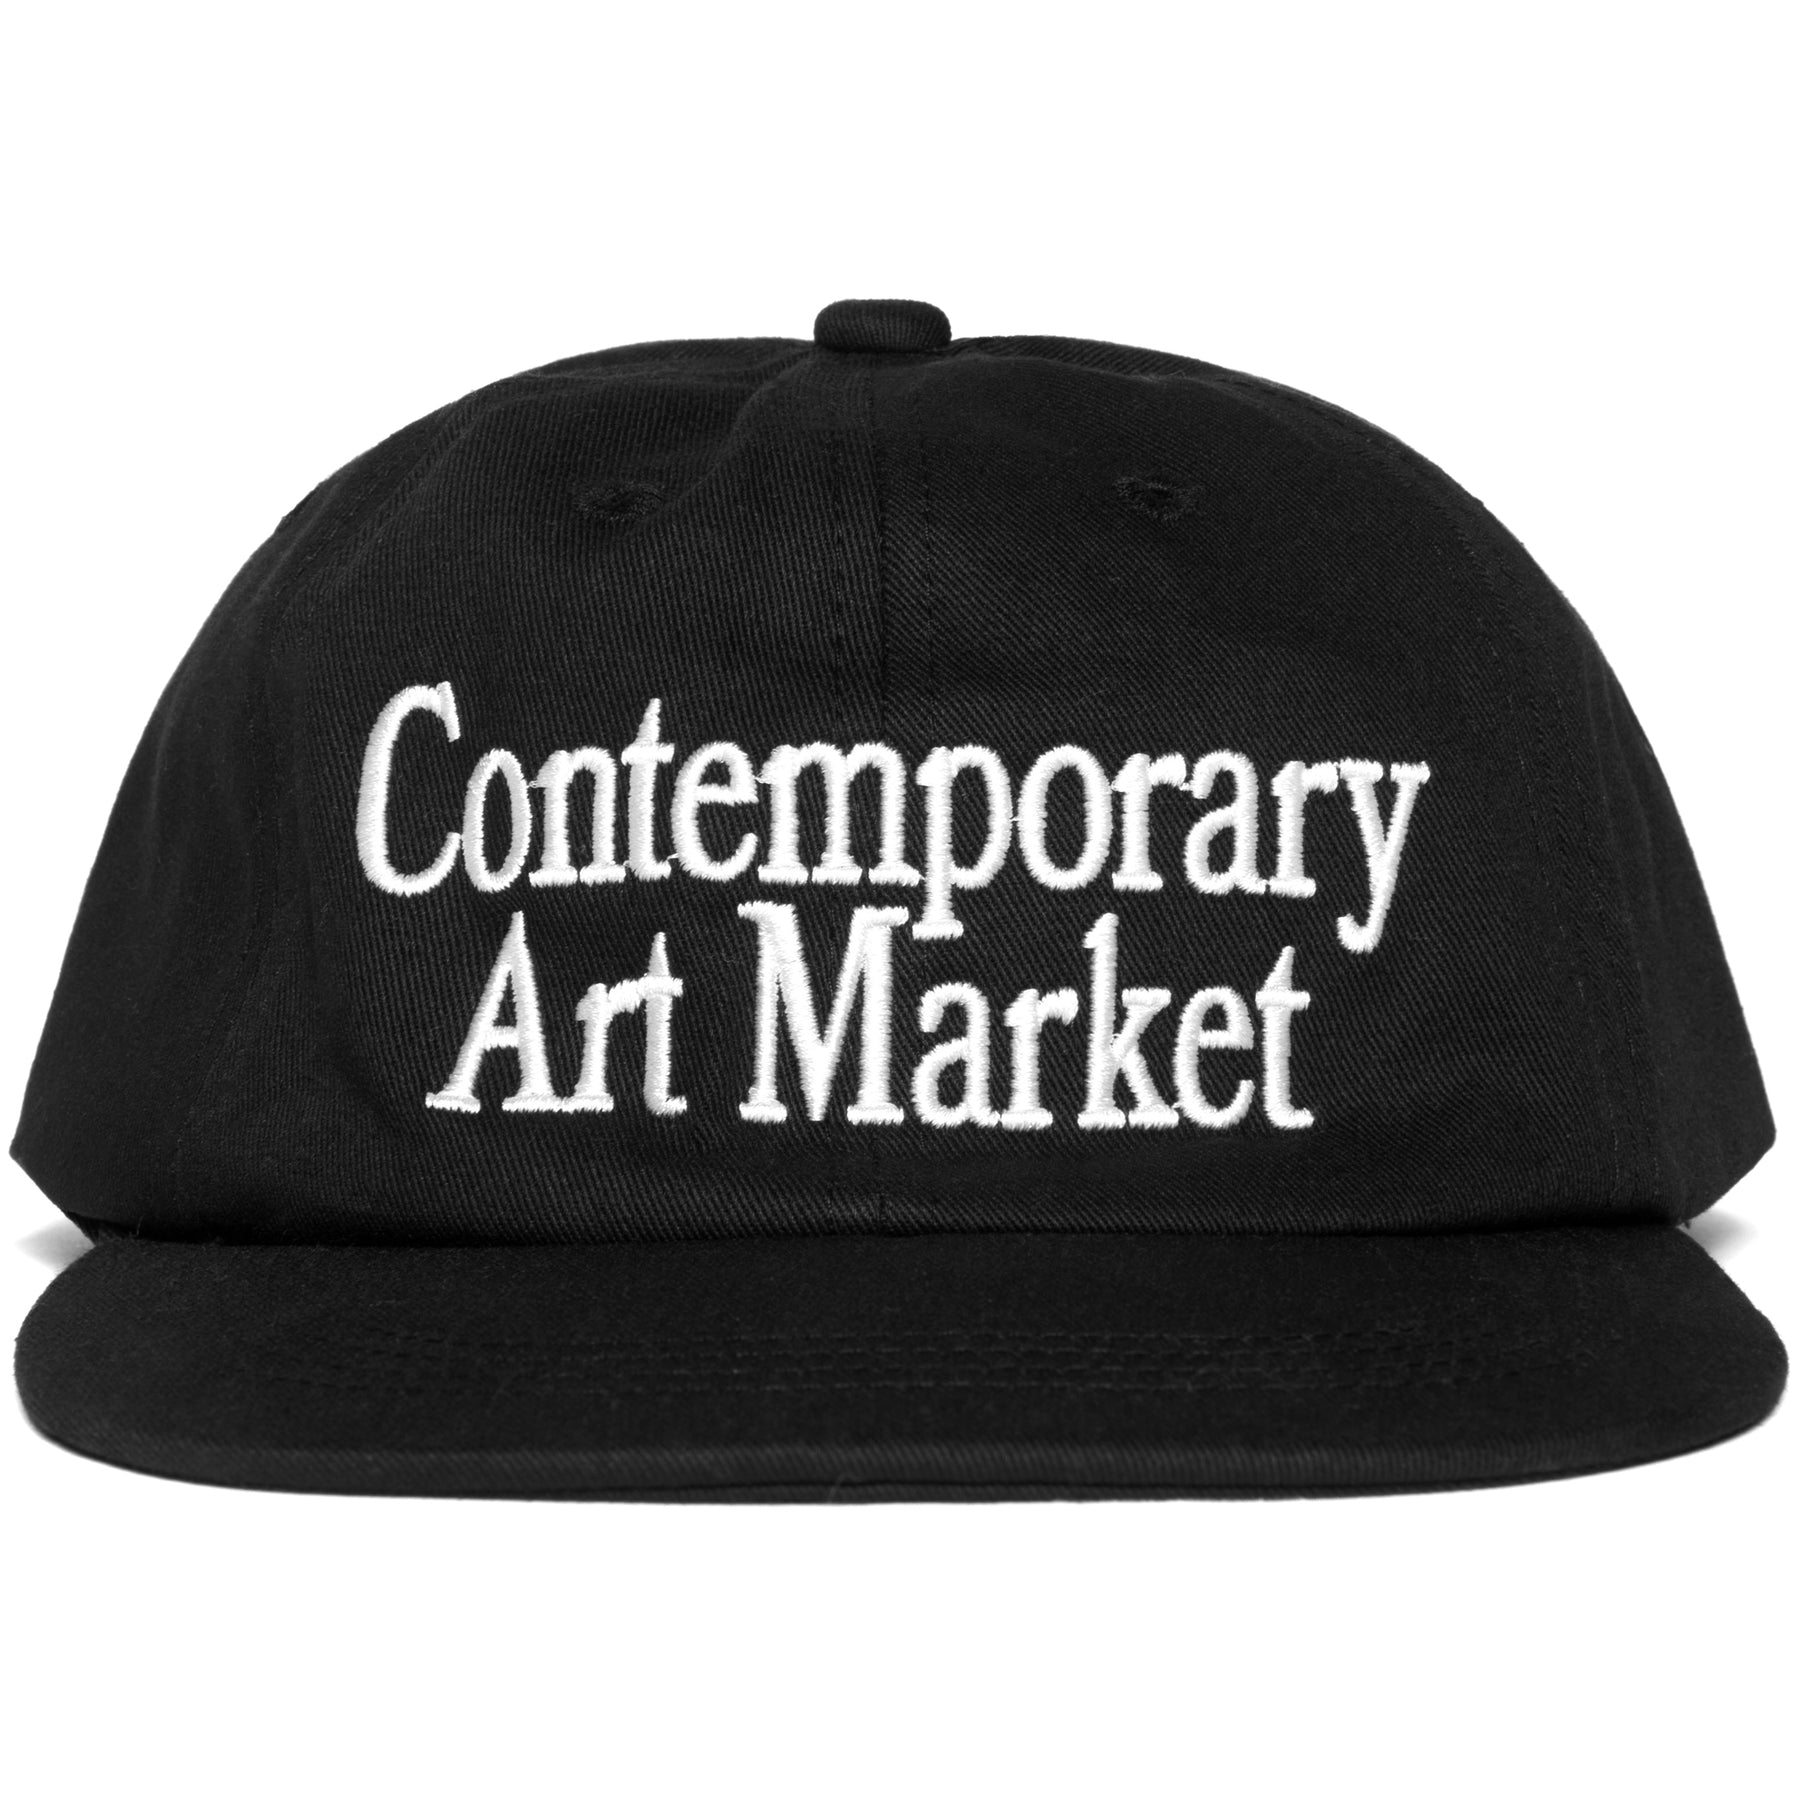 Market Contemporary Art Dad Hat "Black"